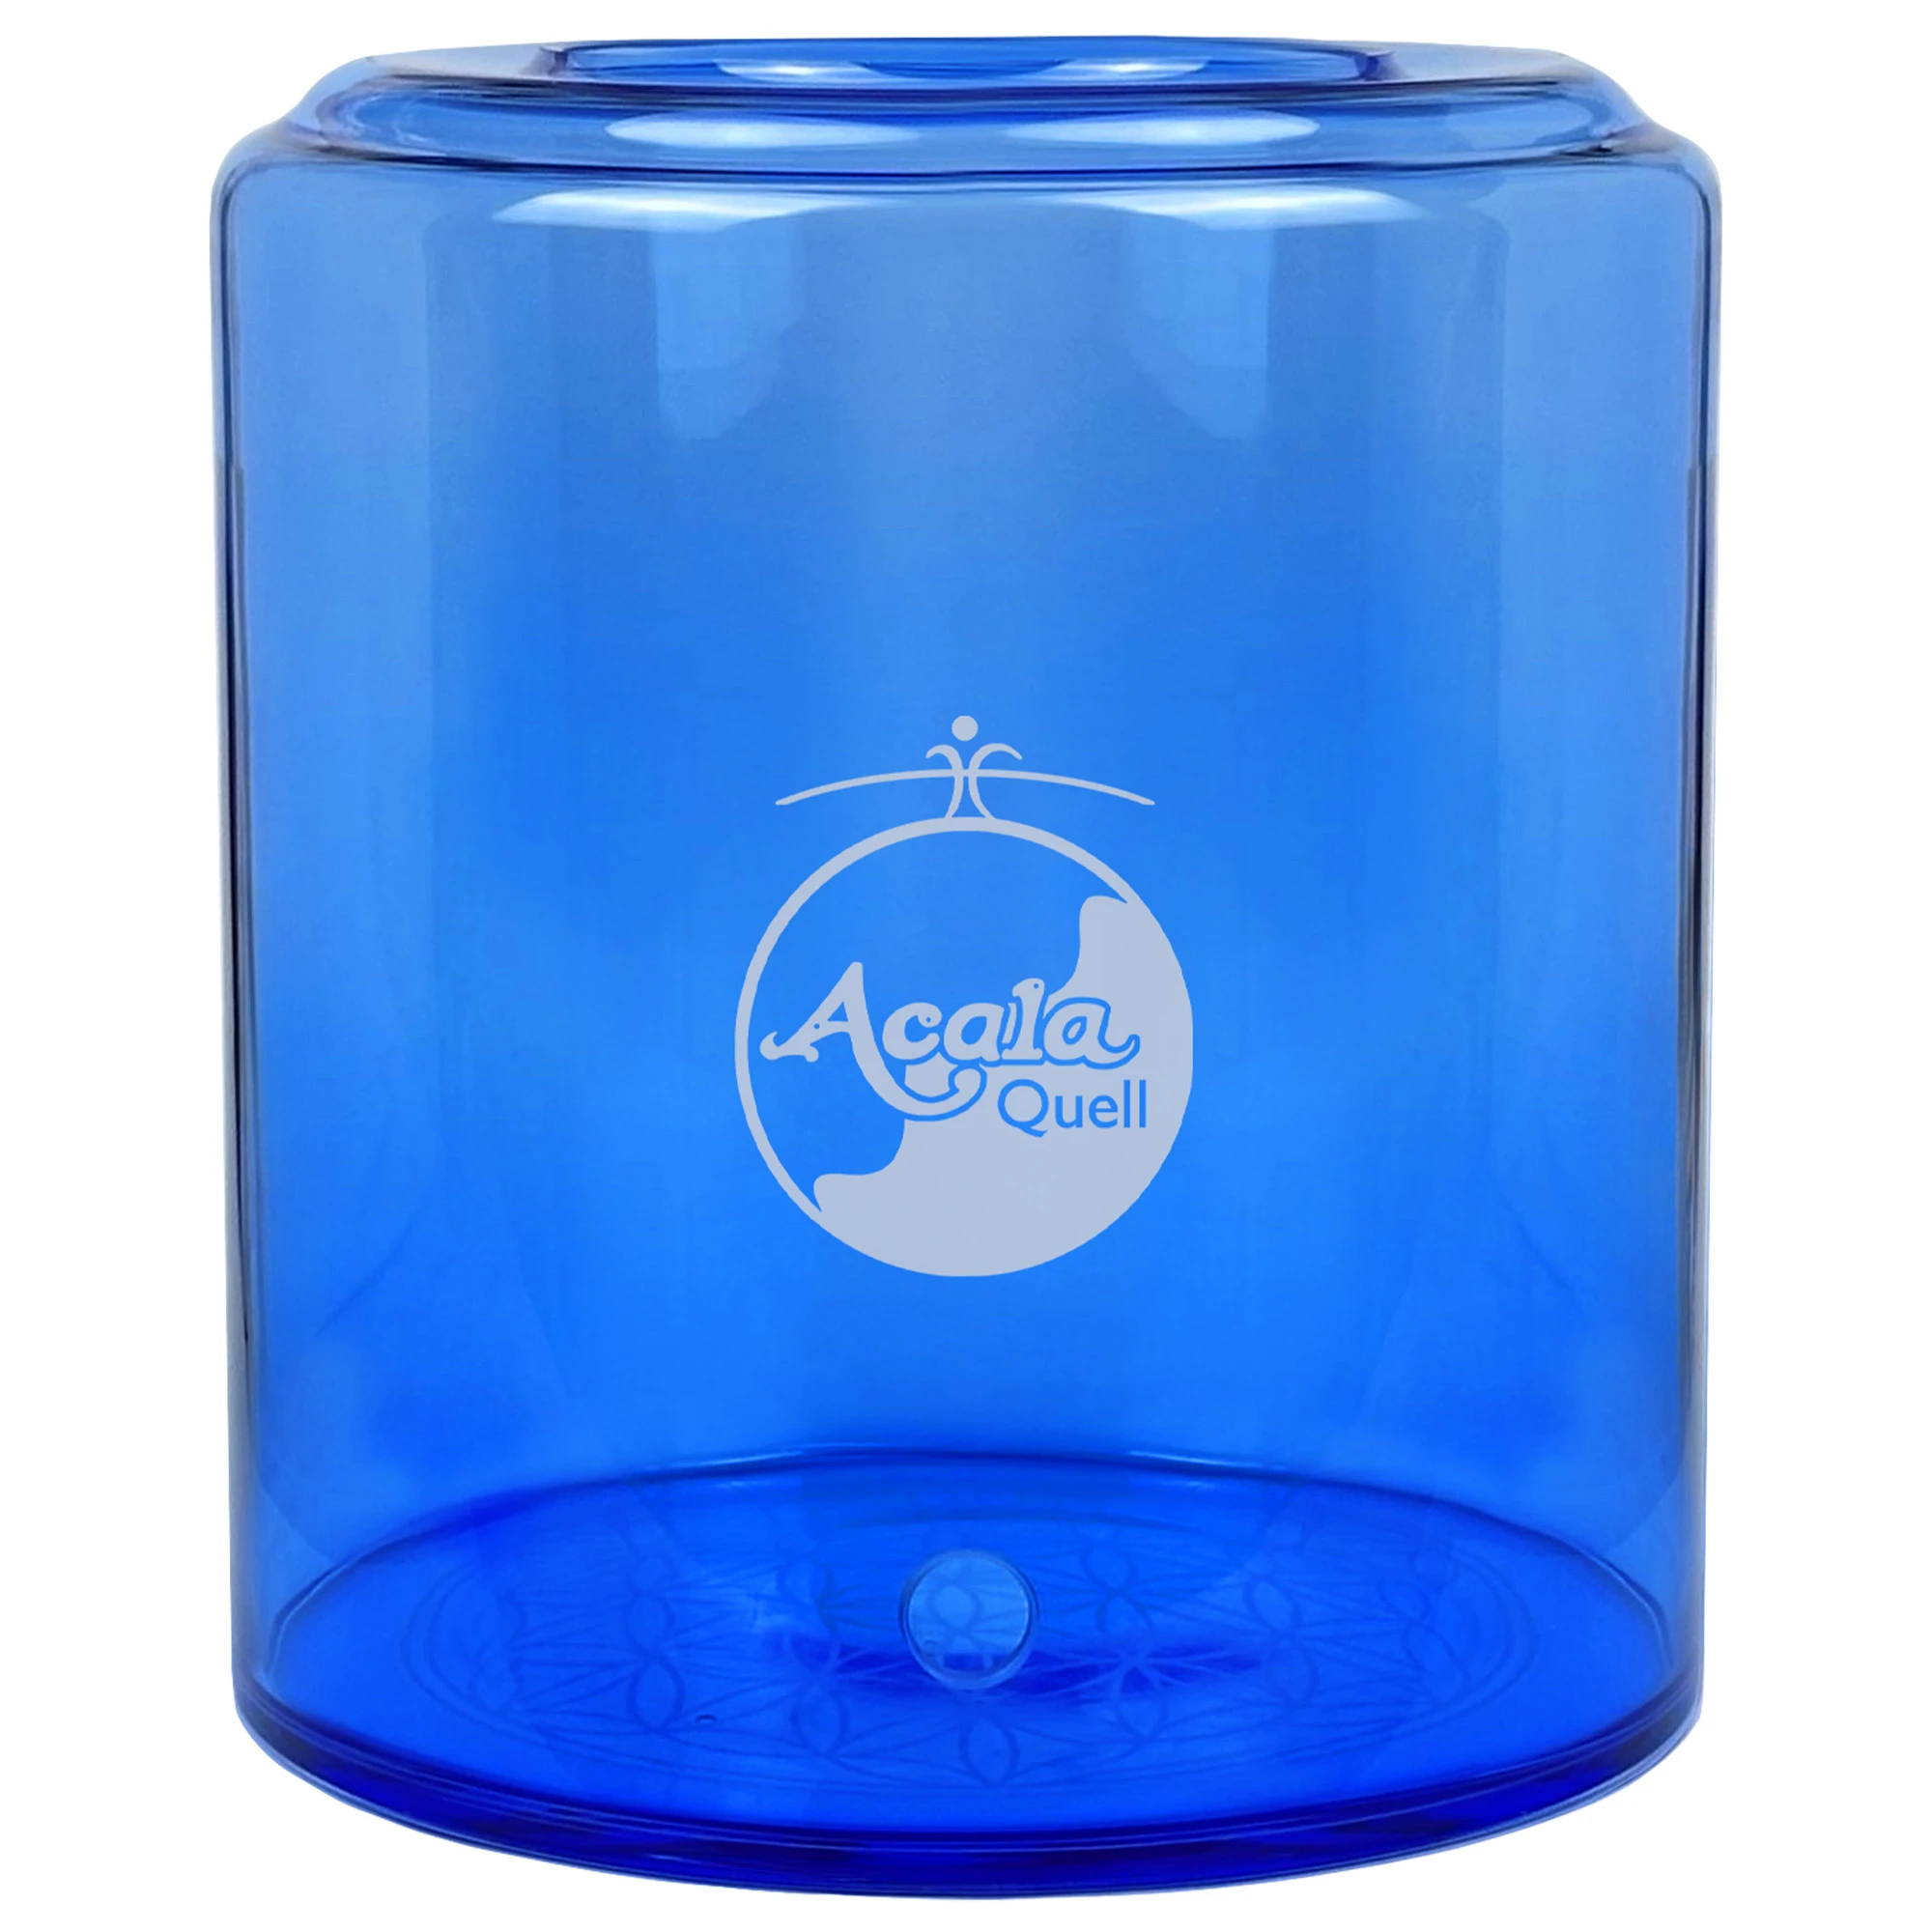 Zu sehen ist ein 10 Liter Glastank für den Acala Standwasserfilter Grande in blau vor weißem Hintergrund. Er hat ein Bohrloch für den Wasserhahn und darüber sieht man das AcalaQuell Logo in weiß, welches auf den Tank graviert ist